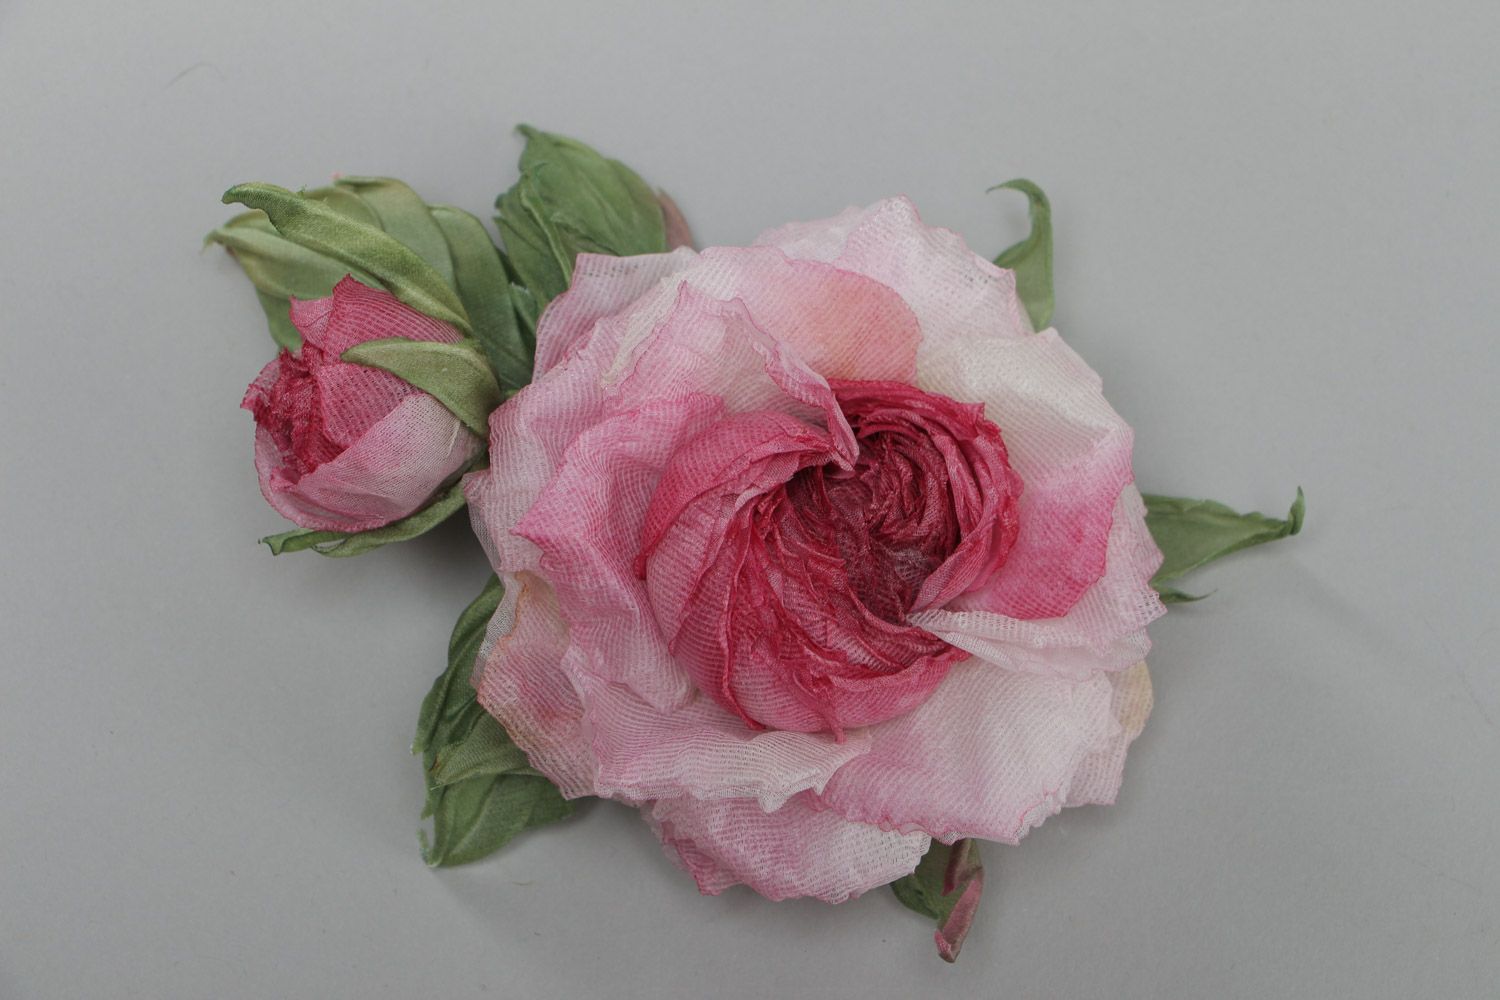 Брошь в виде розы крупная розовая нежная красивая стильная изящная ручной работы фото 2